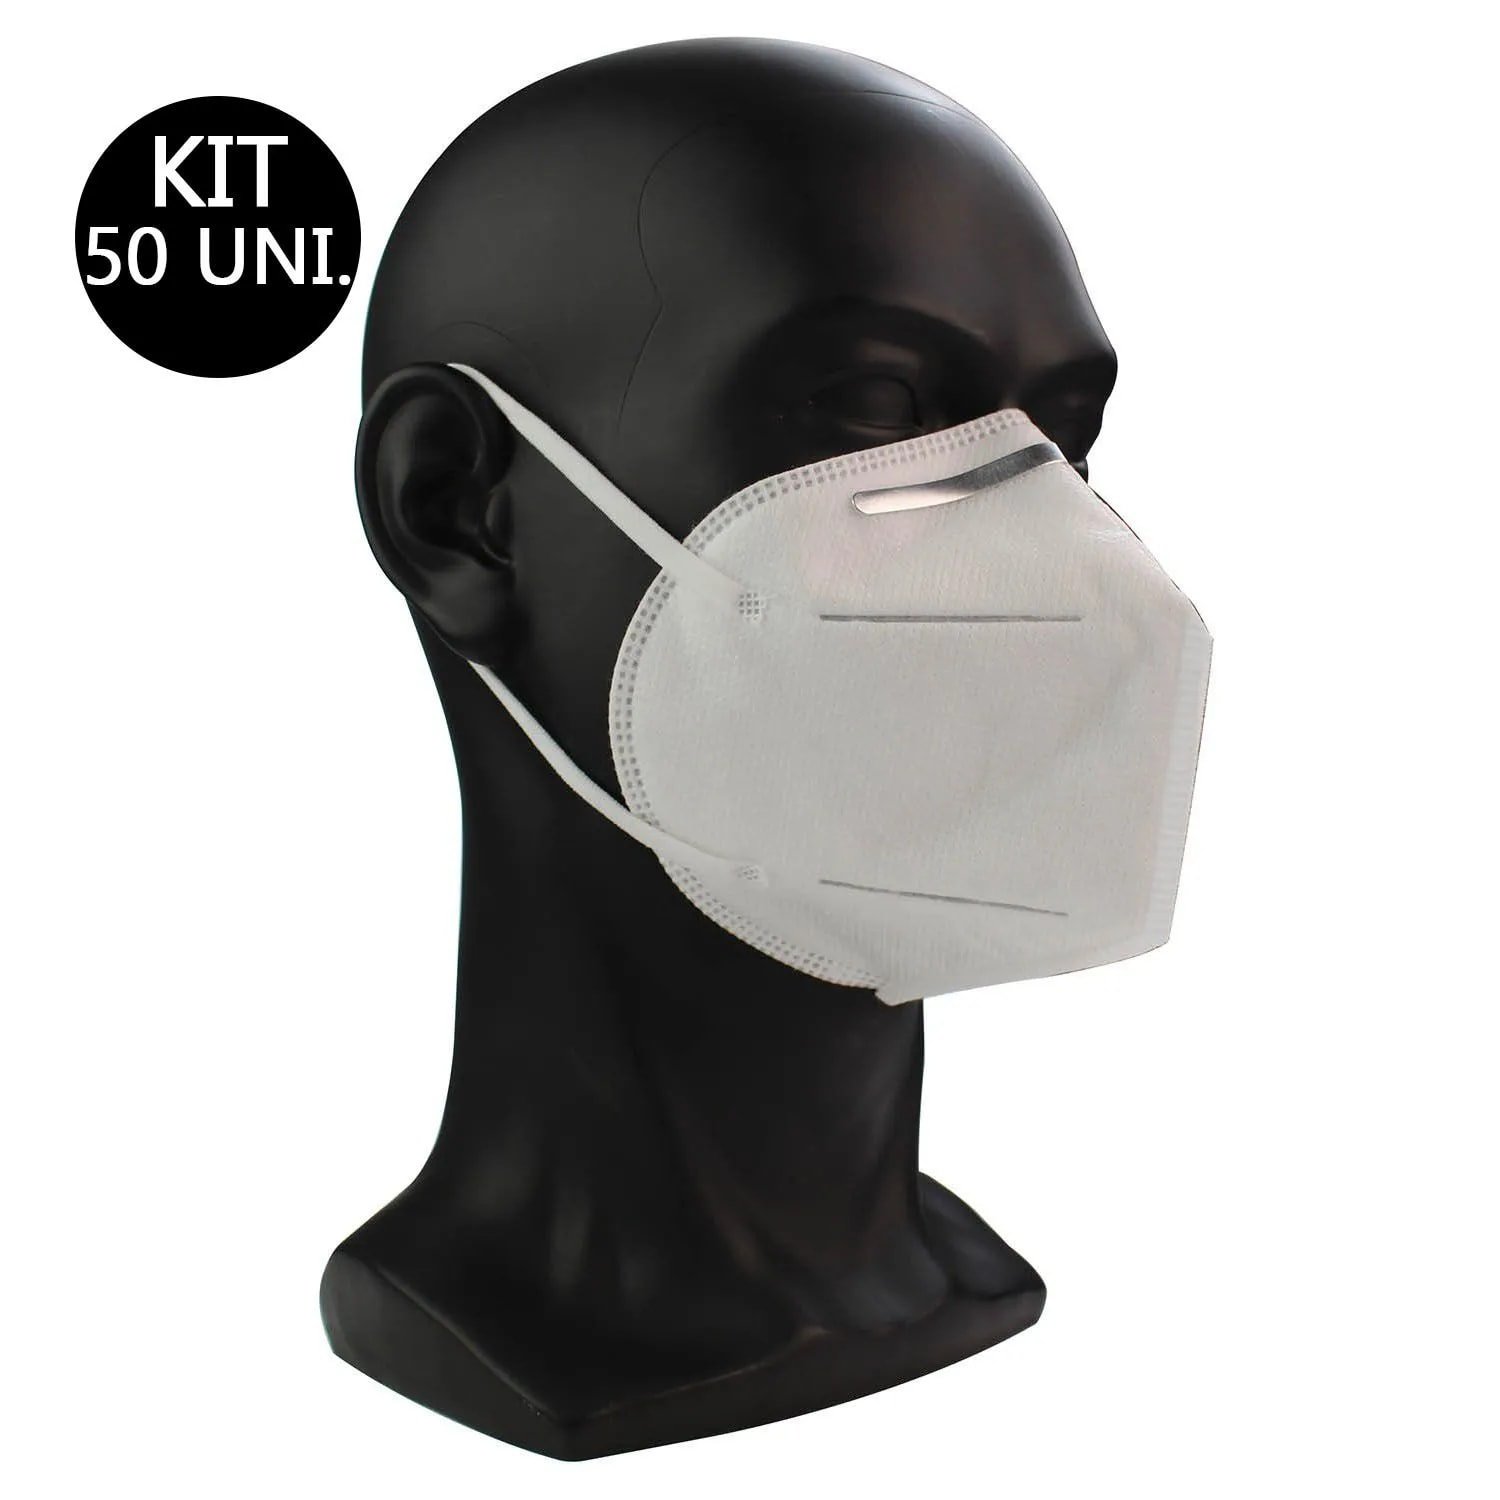 Mascara Respiratoria KN95 Kit 50 Uni Proteção PFF2 Respirador EPI N95 Profissional